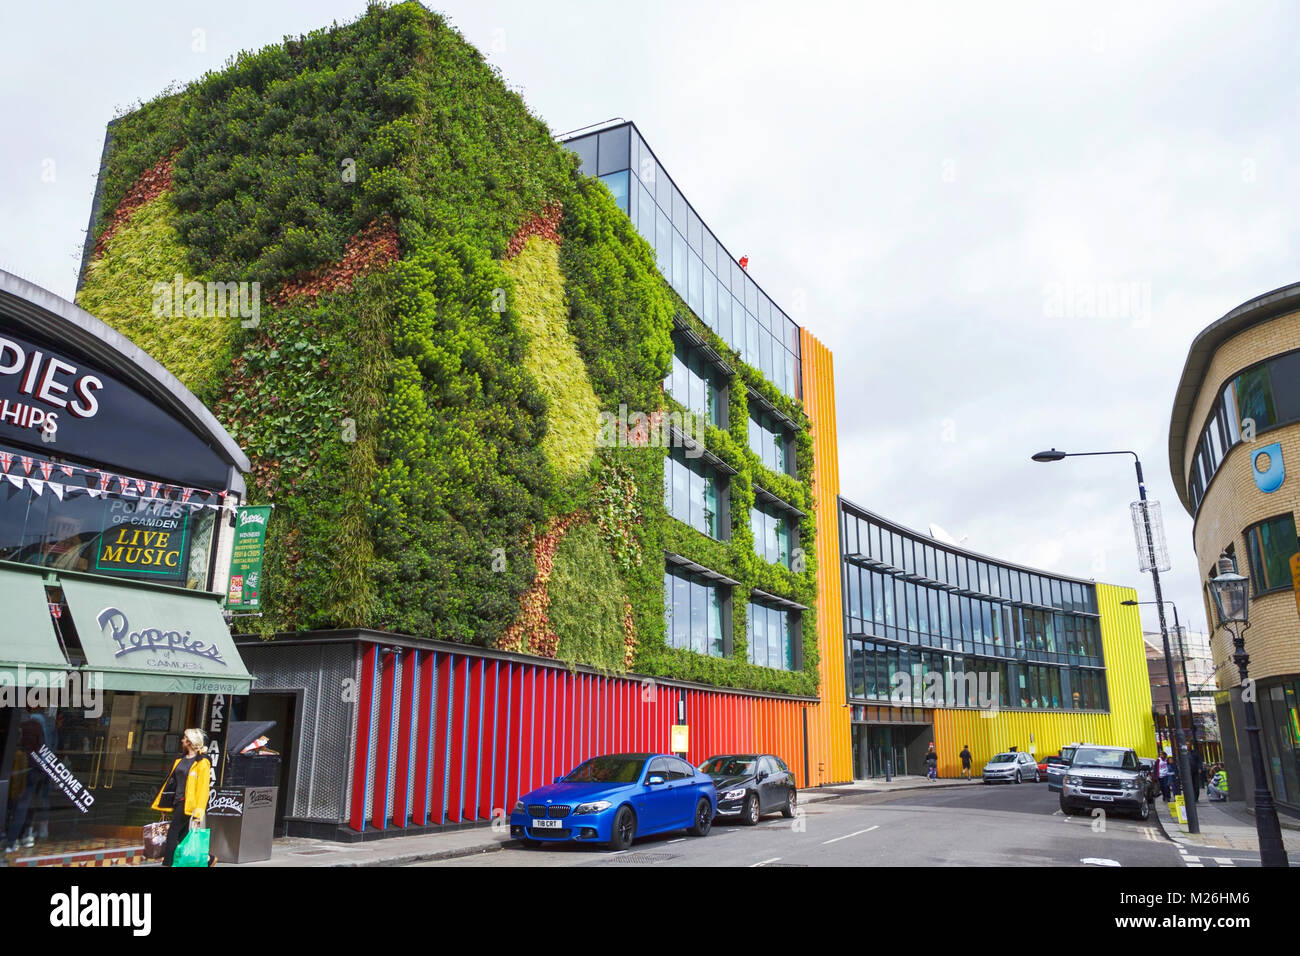 MTV camden. MTV Europe. Gebäude mit Wohnwand. London, NW1, Großbritannien. Umweltdesign. Nachhaltigkeit. Stockfoto